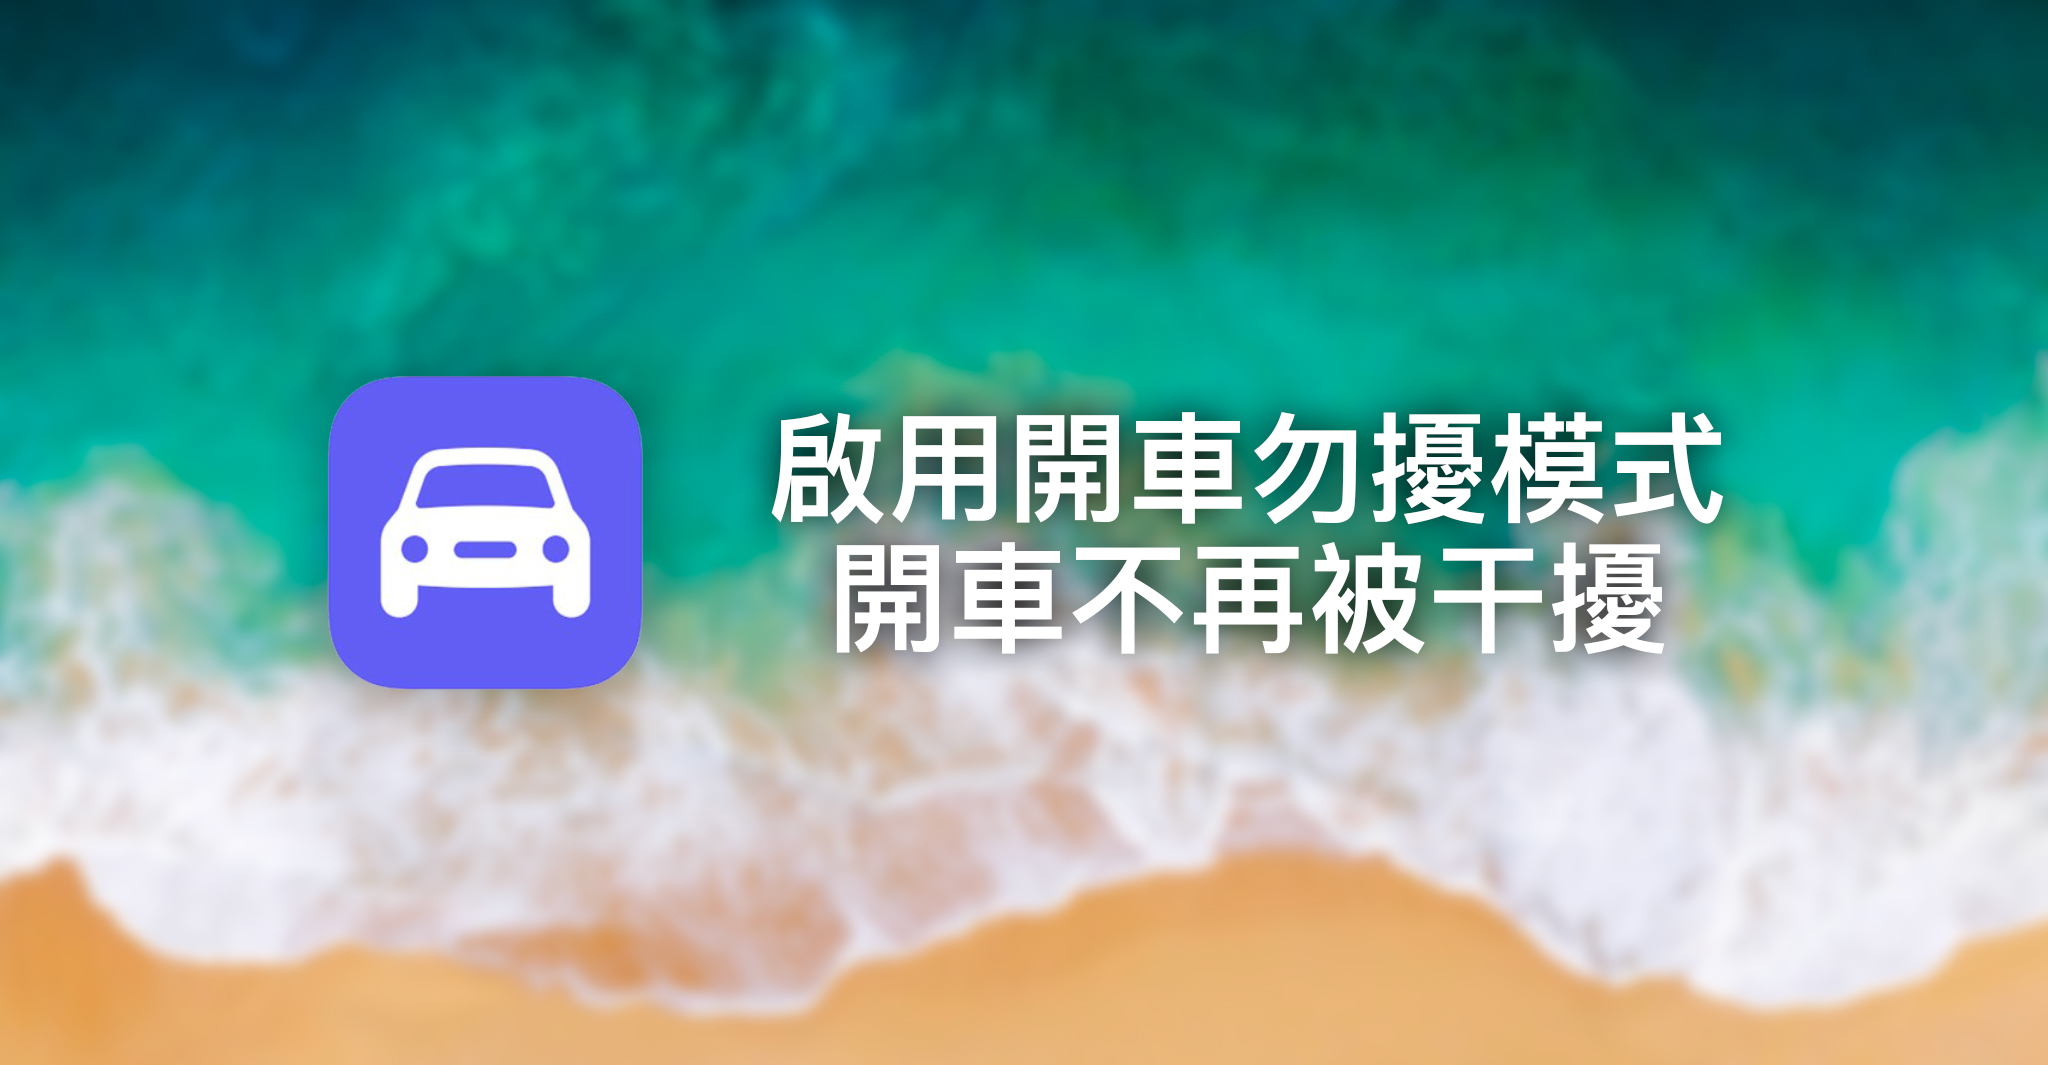 在iOS 11上啟用開車勿擾模式 開車不再被干擾